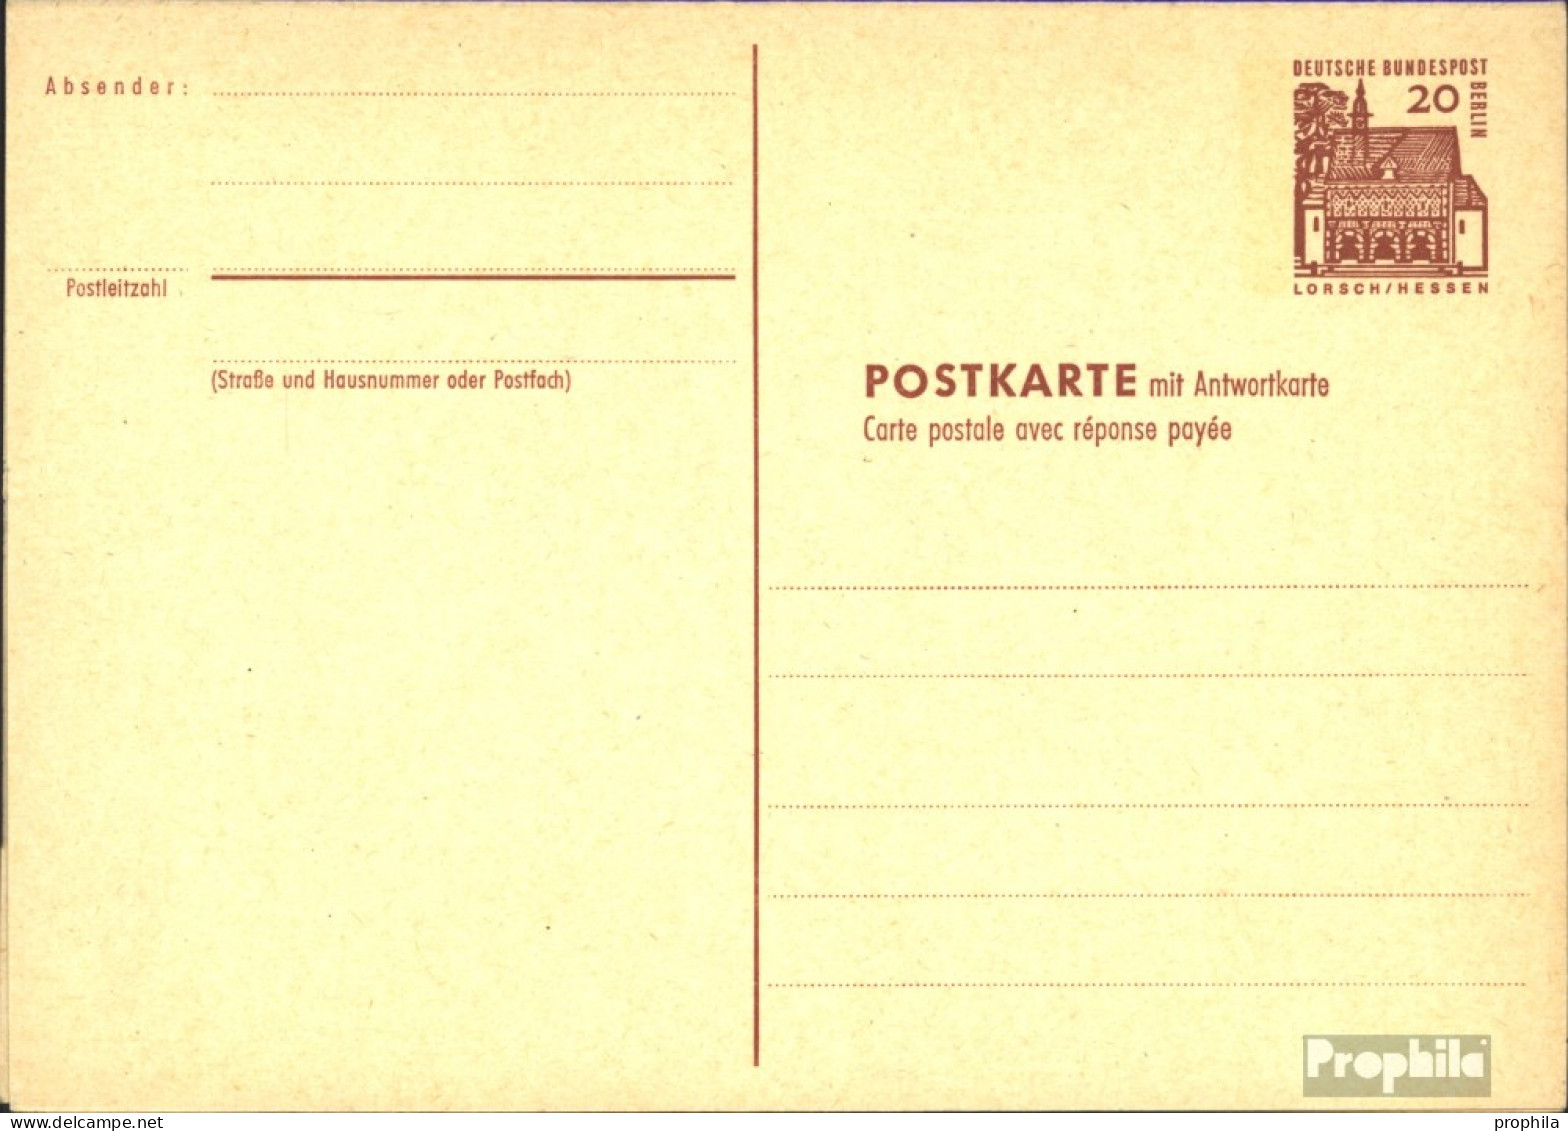 Berlin (West) P67 Amtliche Postkarte Gefälligkeitsgestempelt Gebraucht 1965 Dt. Bauwerke I - Cartes Postales - Oblitérées